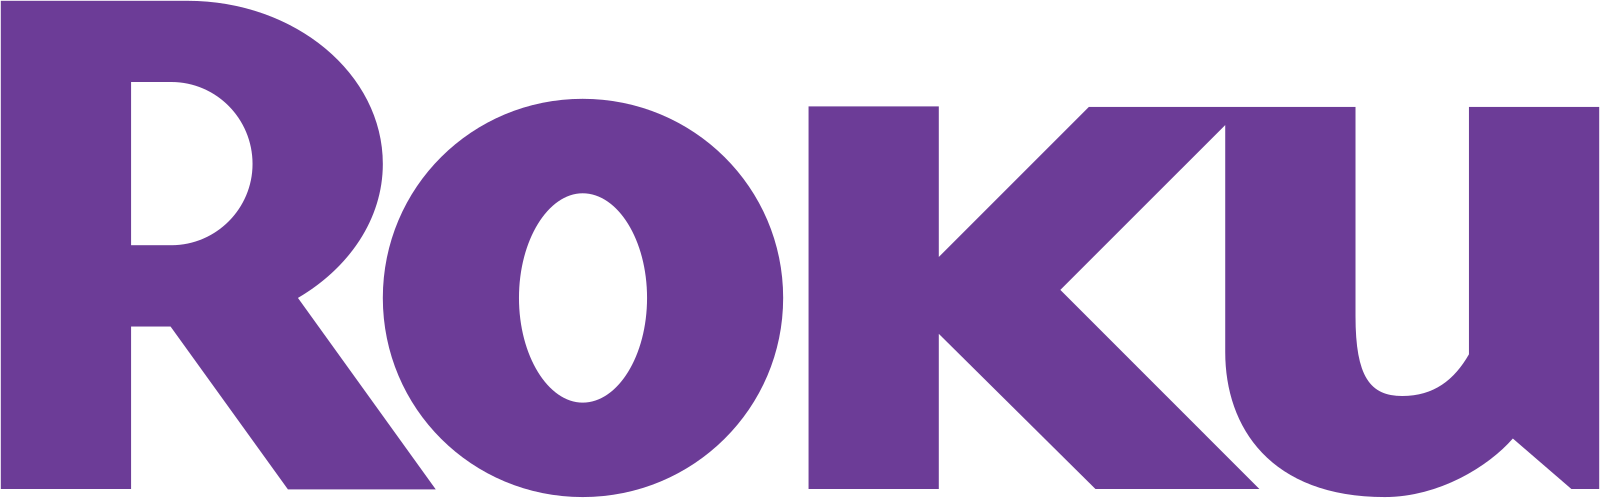 Roku_logo.svg